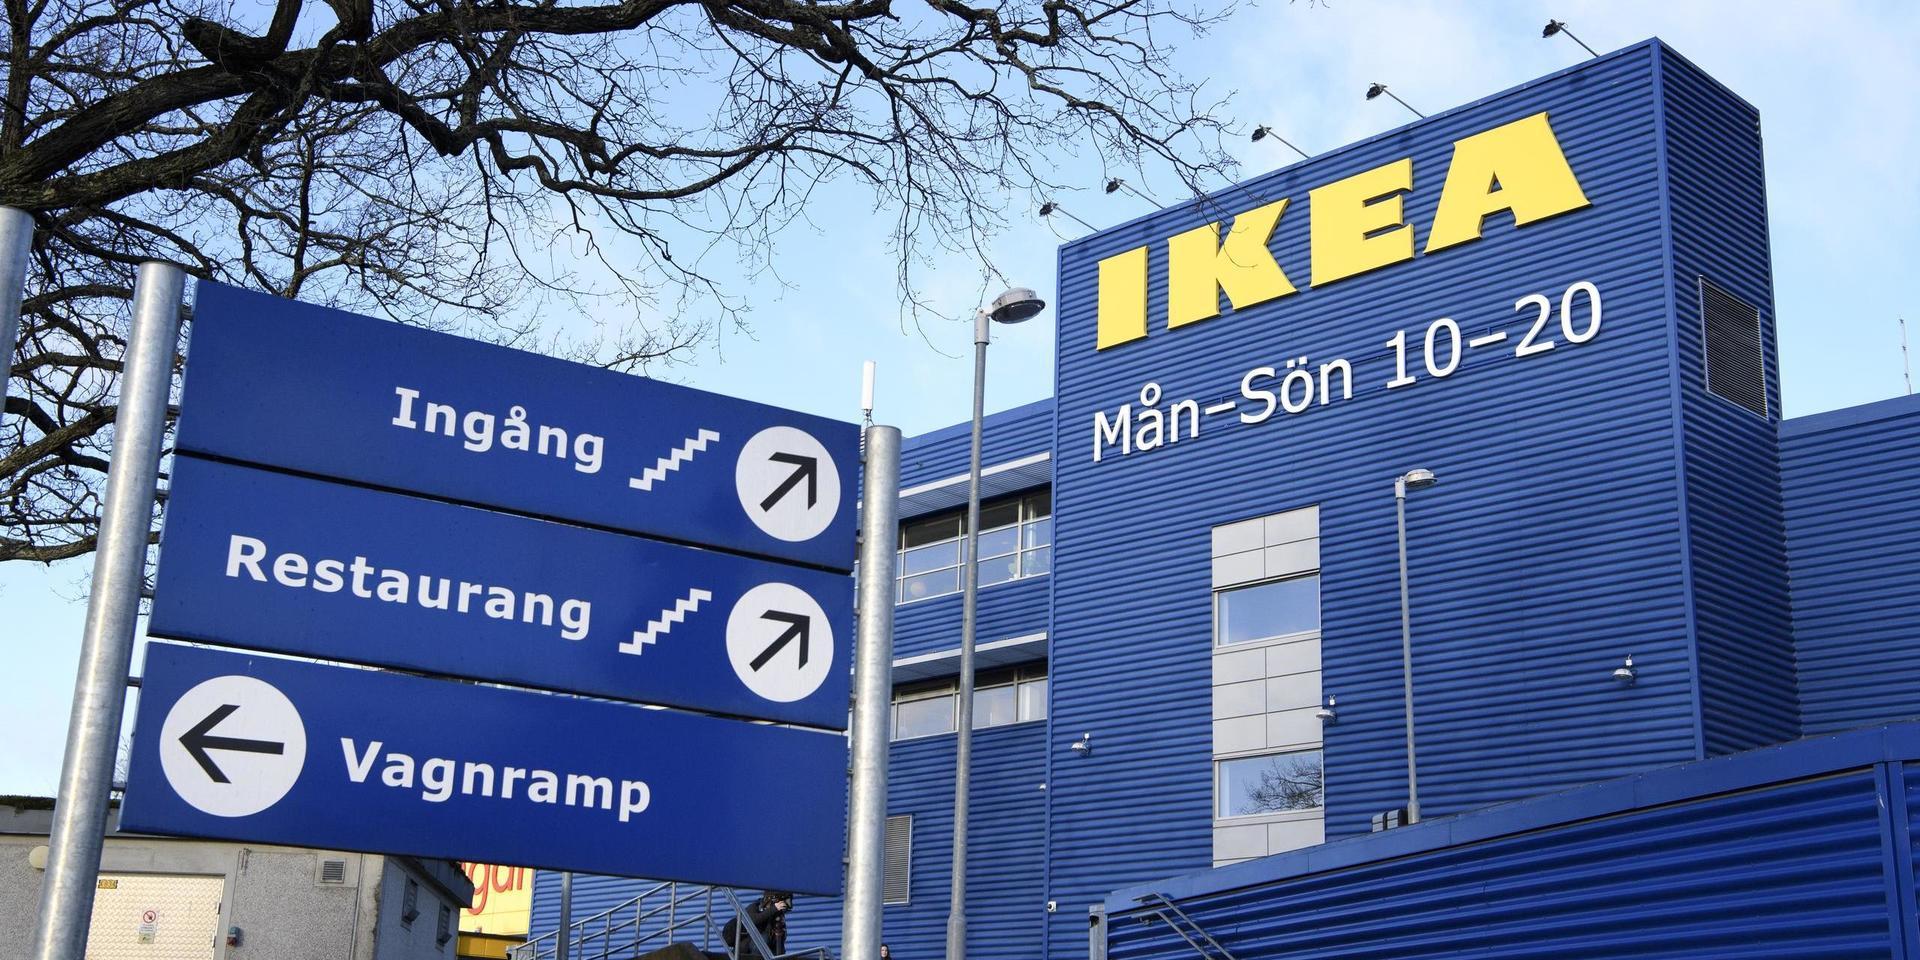 Ikeas varuhus i Kungens Kurva. Arkivbild.